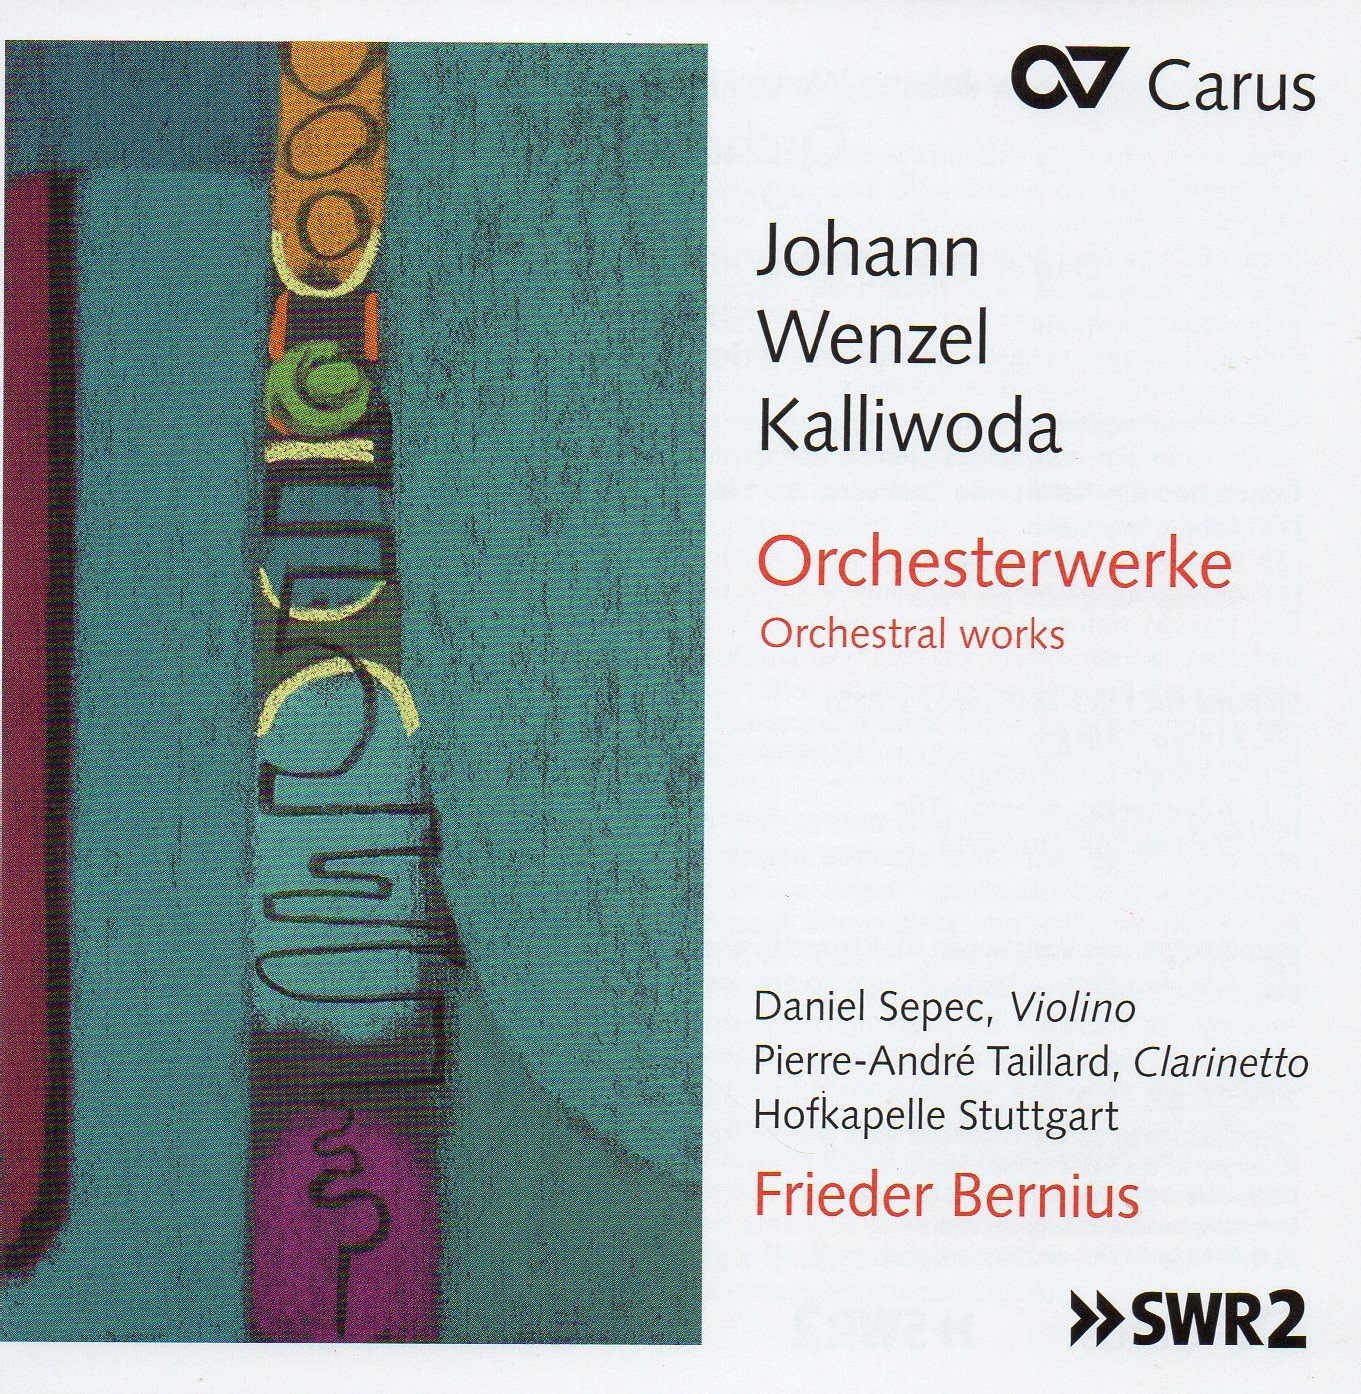 L'obra orquestral de Kalliwoda